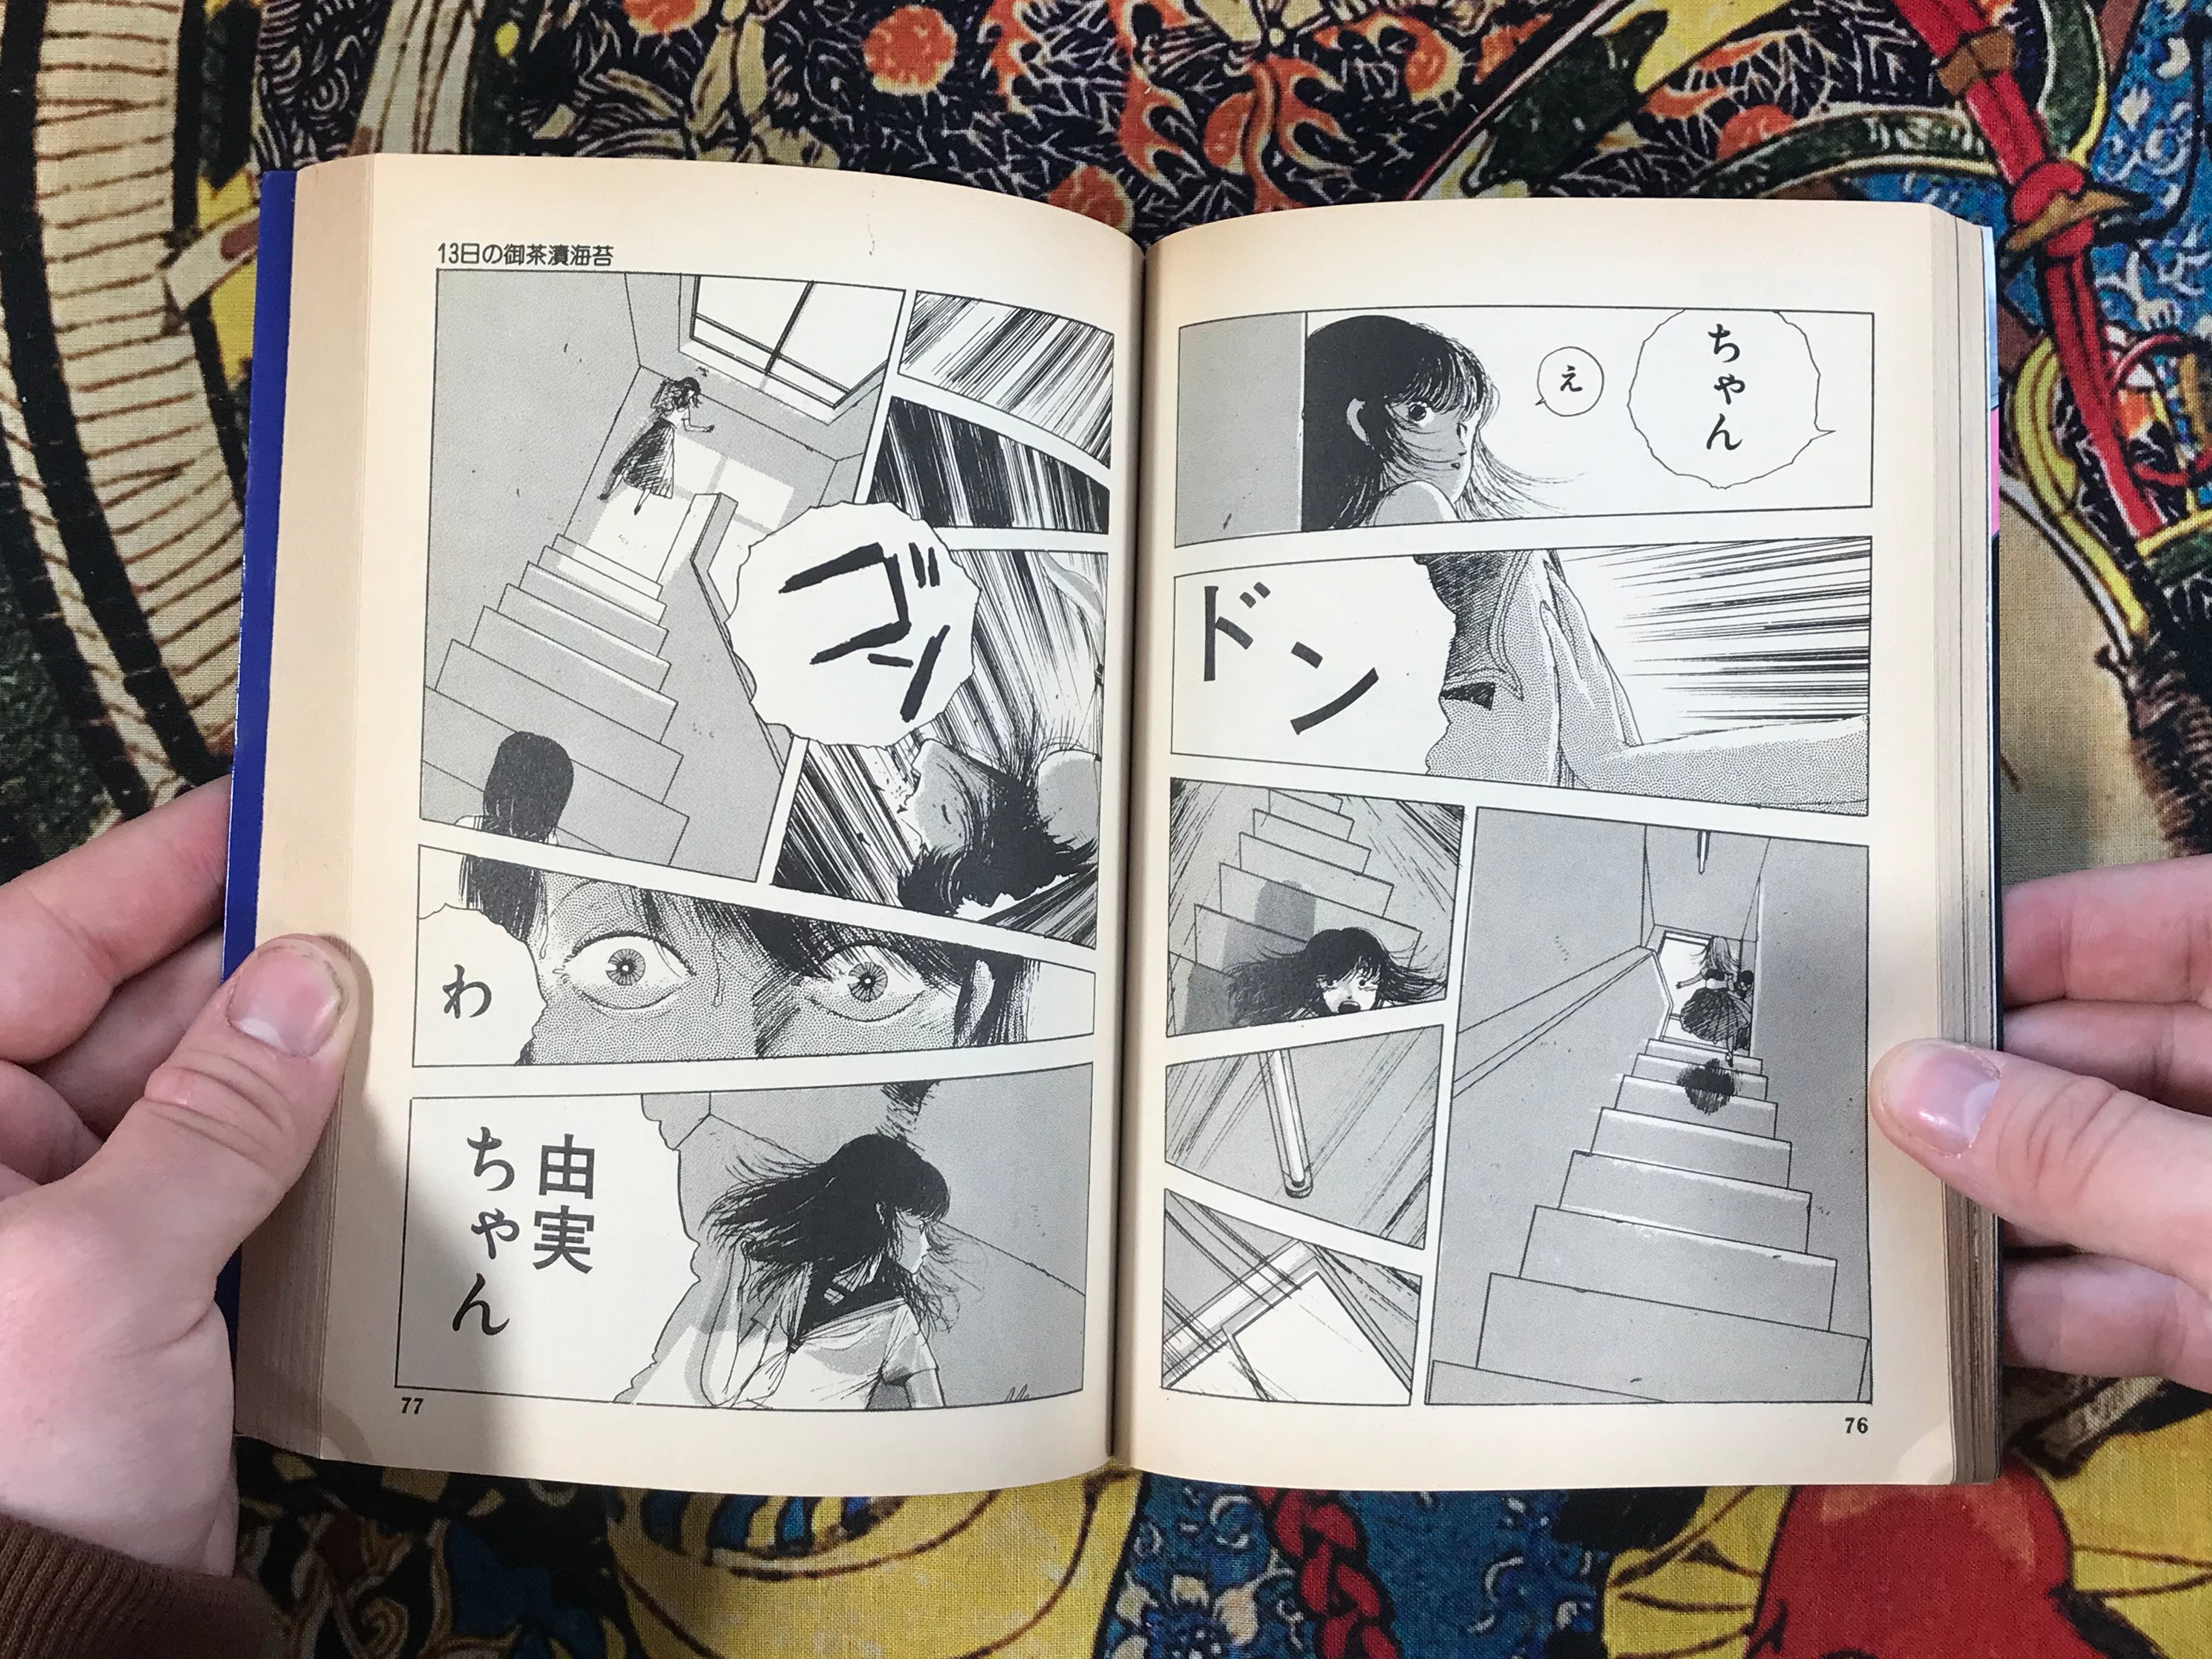 13 Days of Ochazukenori by Ochazukenori (1988)